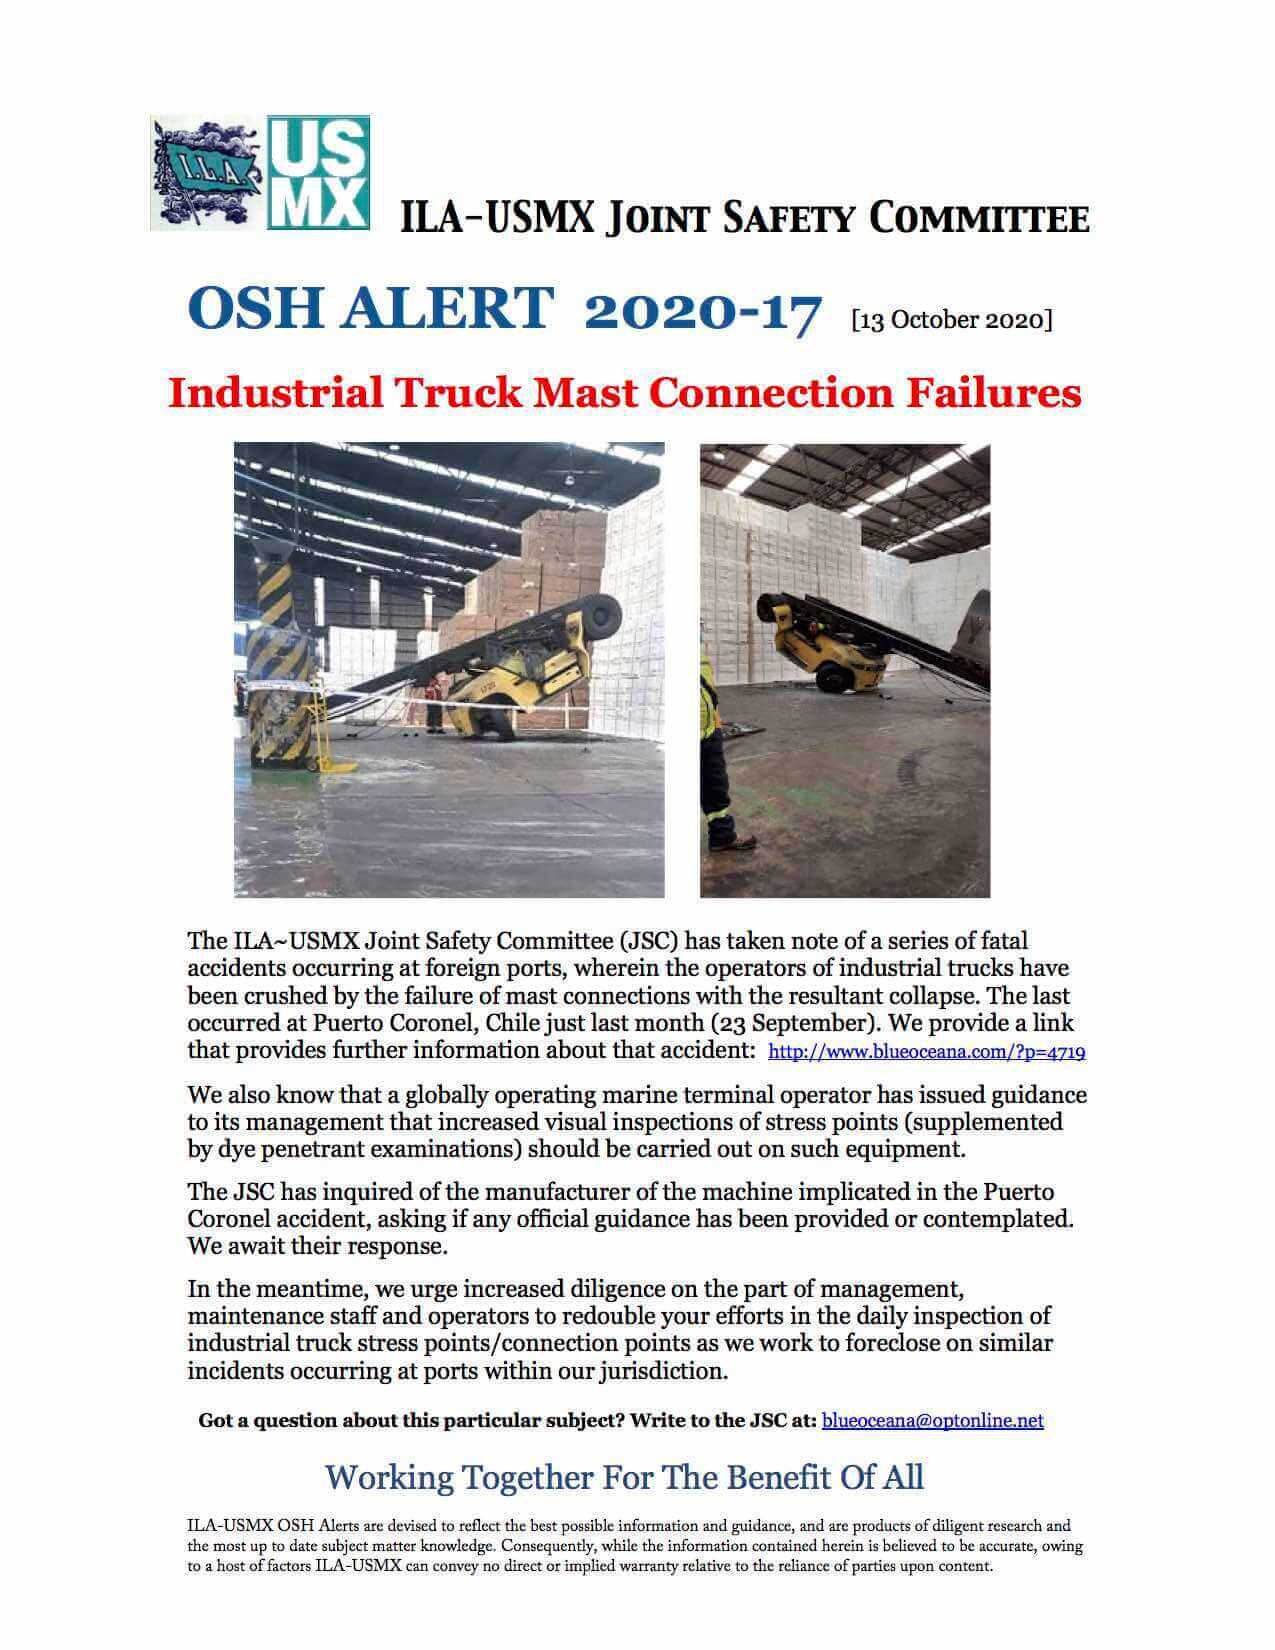 OSH Alert 2020-17 Mast Connection Failures